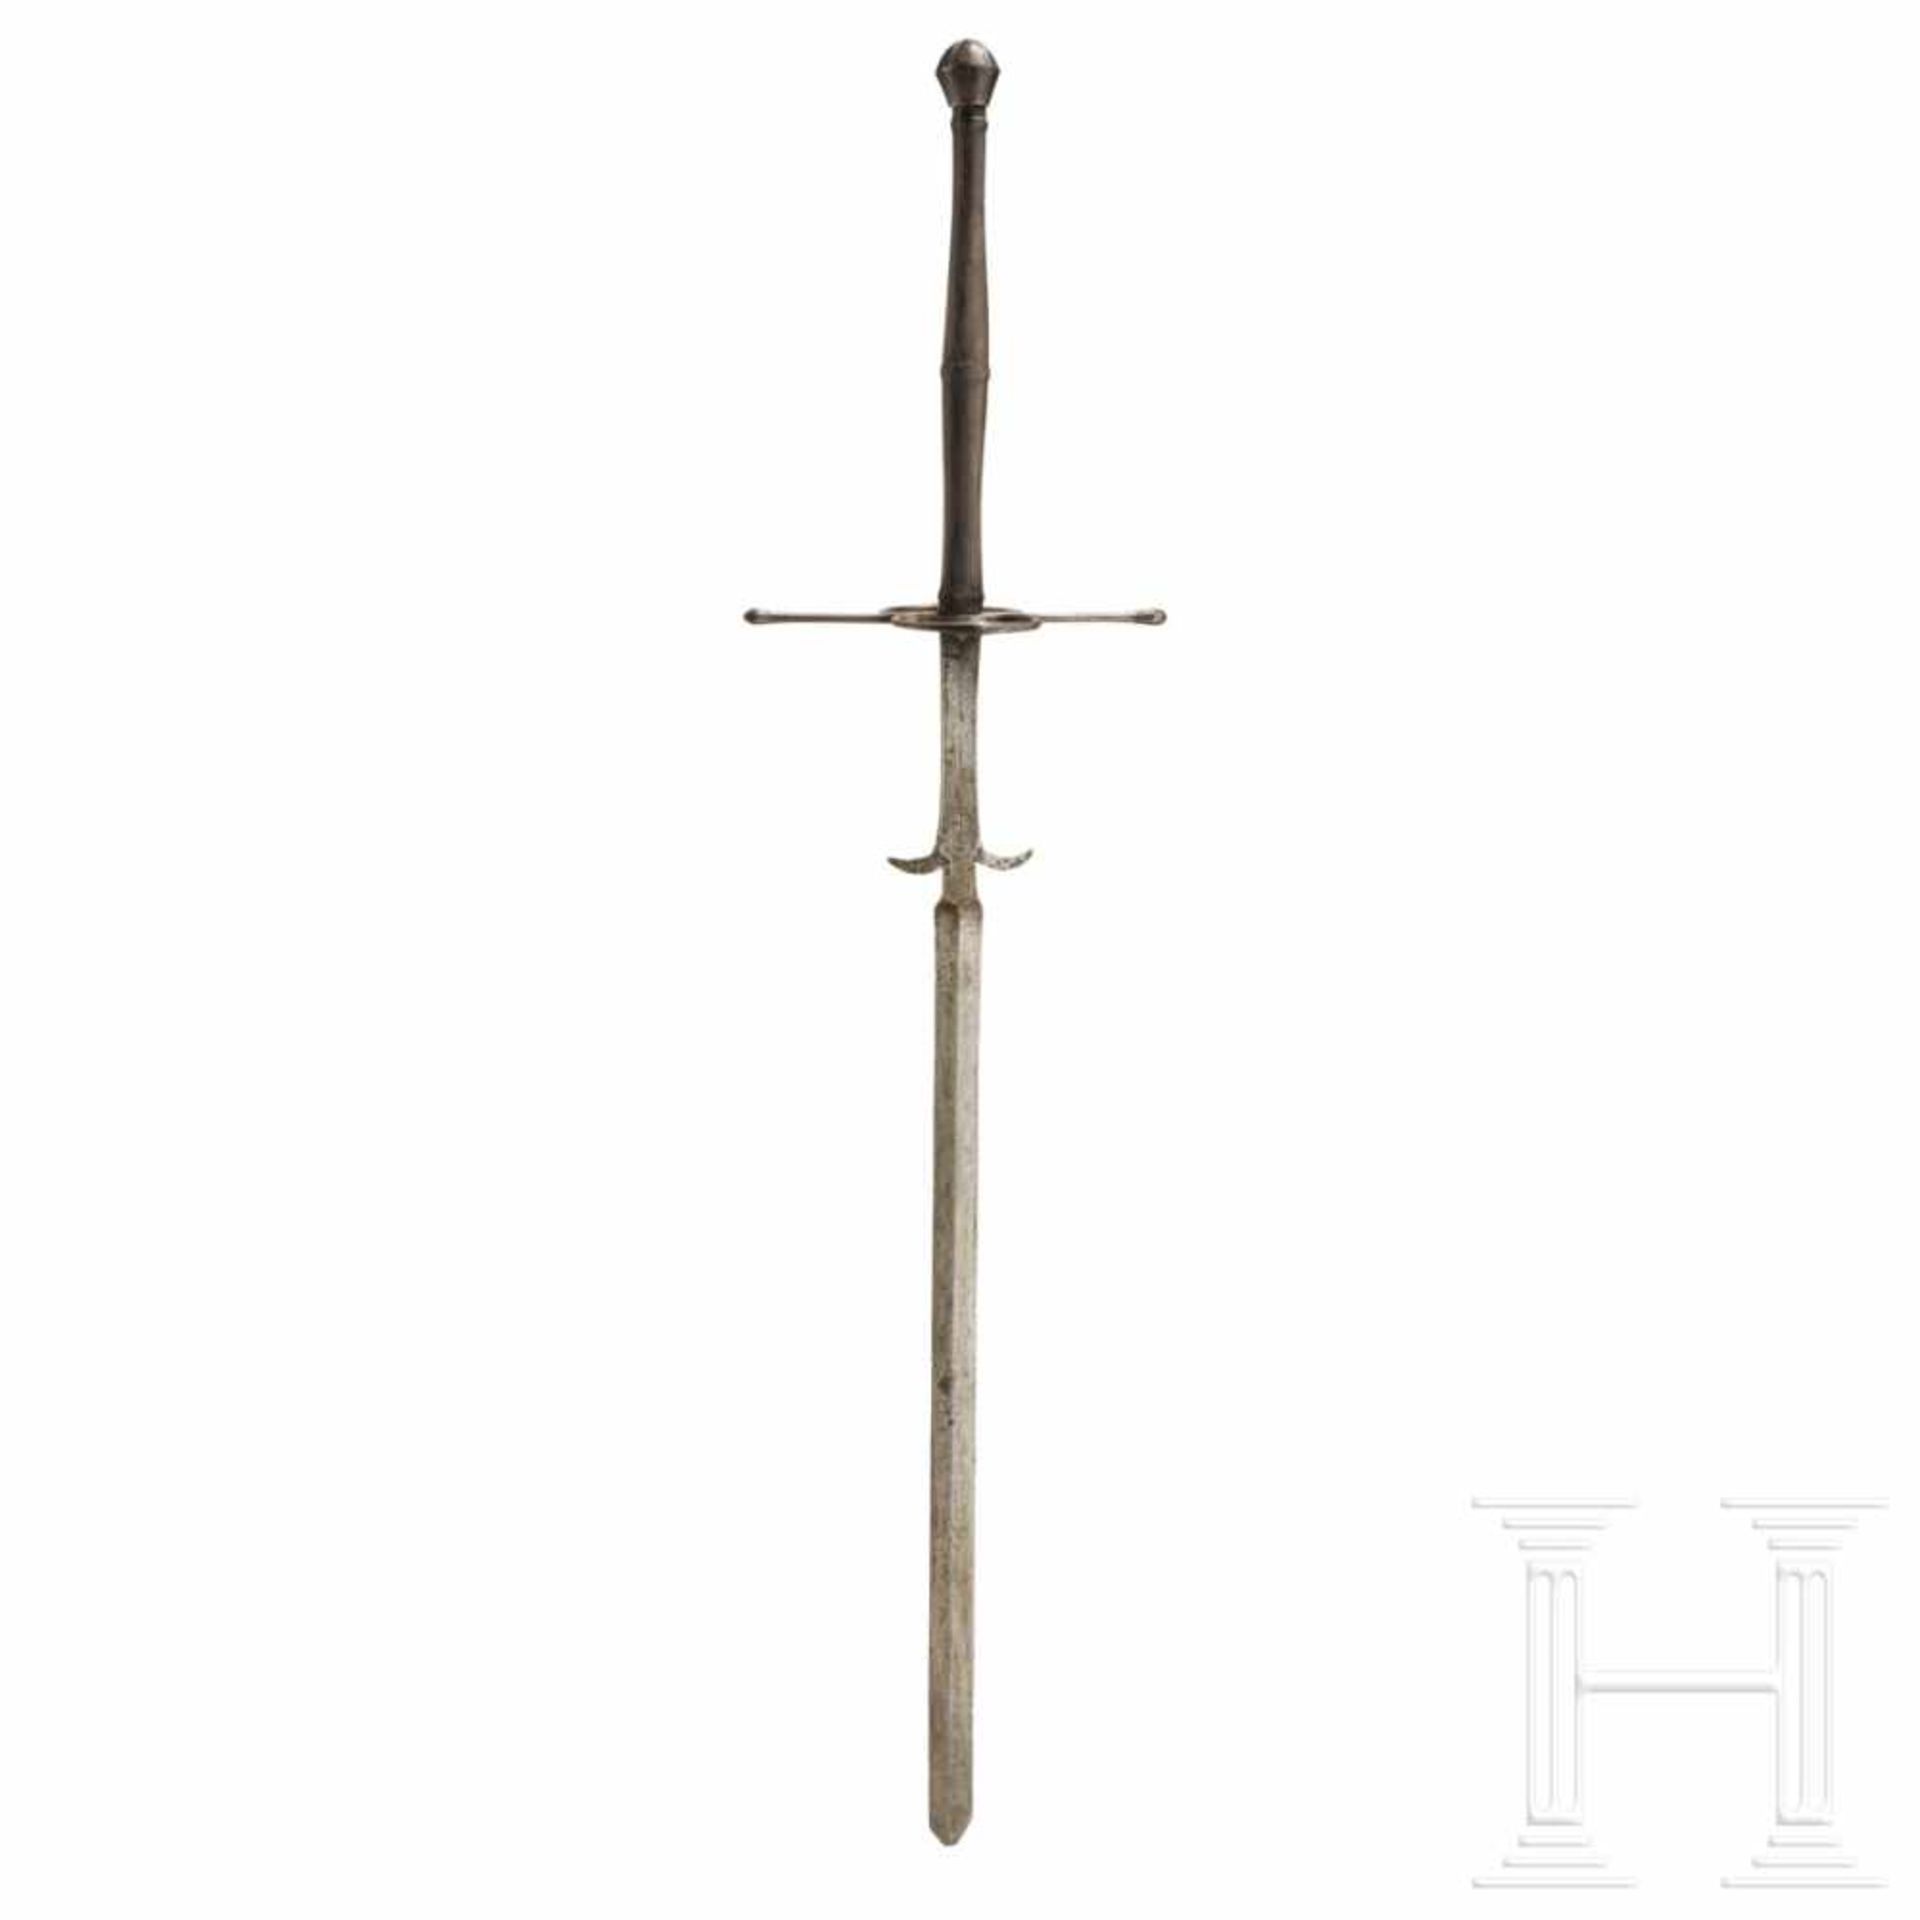 A German two-hand sword, circa 1580Beidseitig gegratete, zweischneidige Klinge mit seitlichen